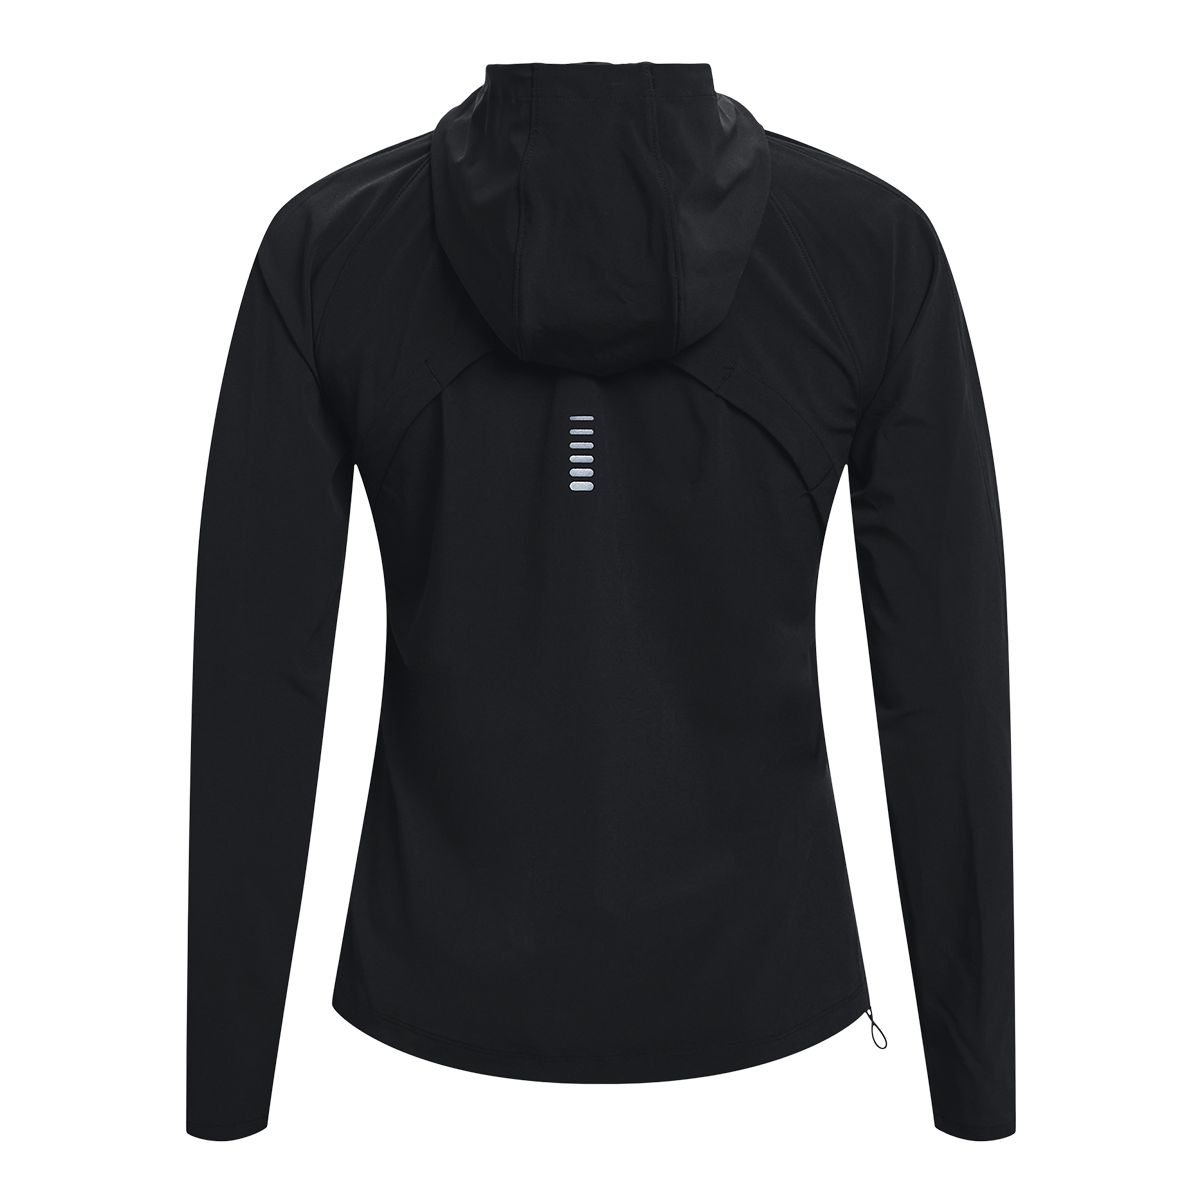 Under Armour Storm Half-Zip Womens Jackets Size L, Color: Black/White